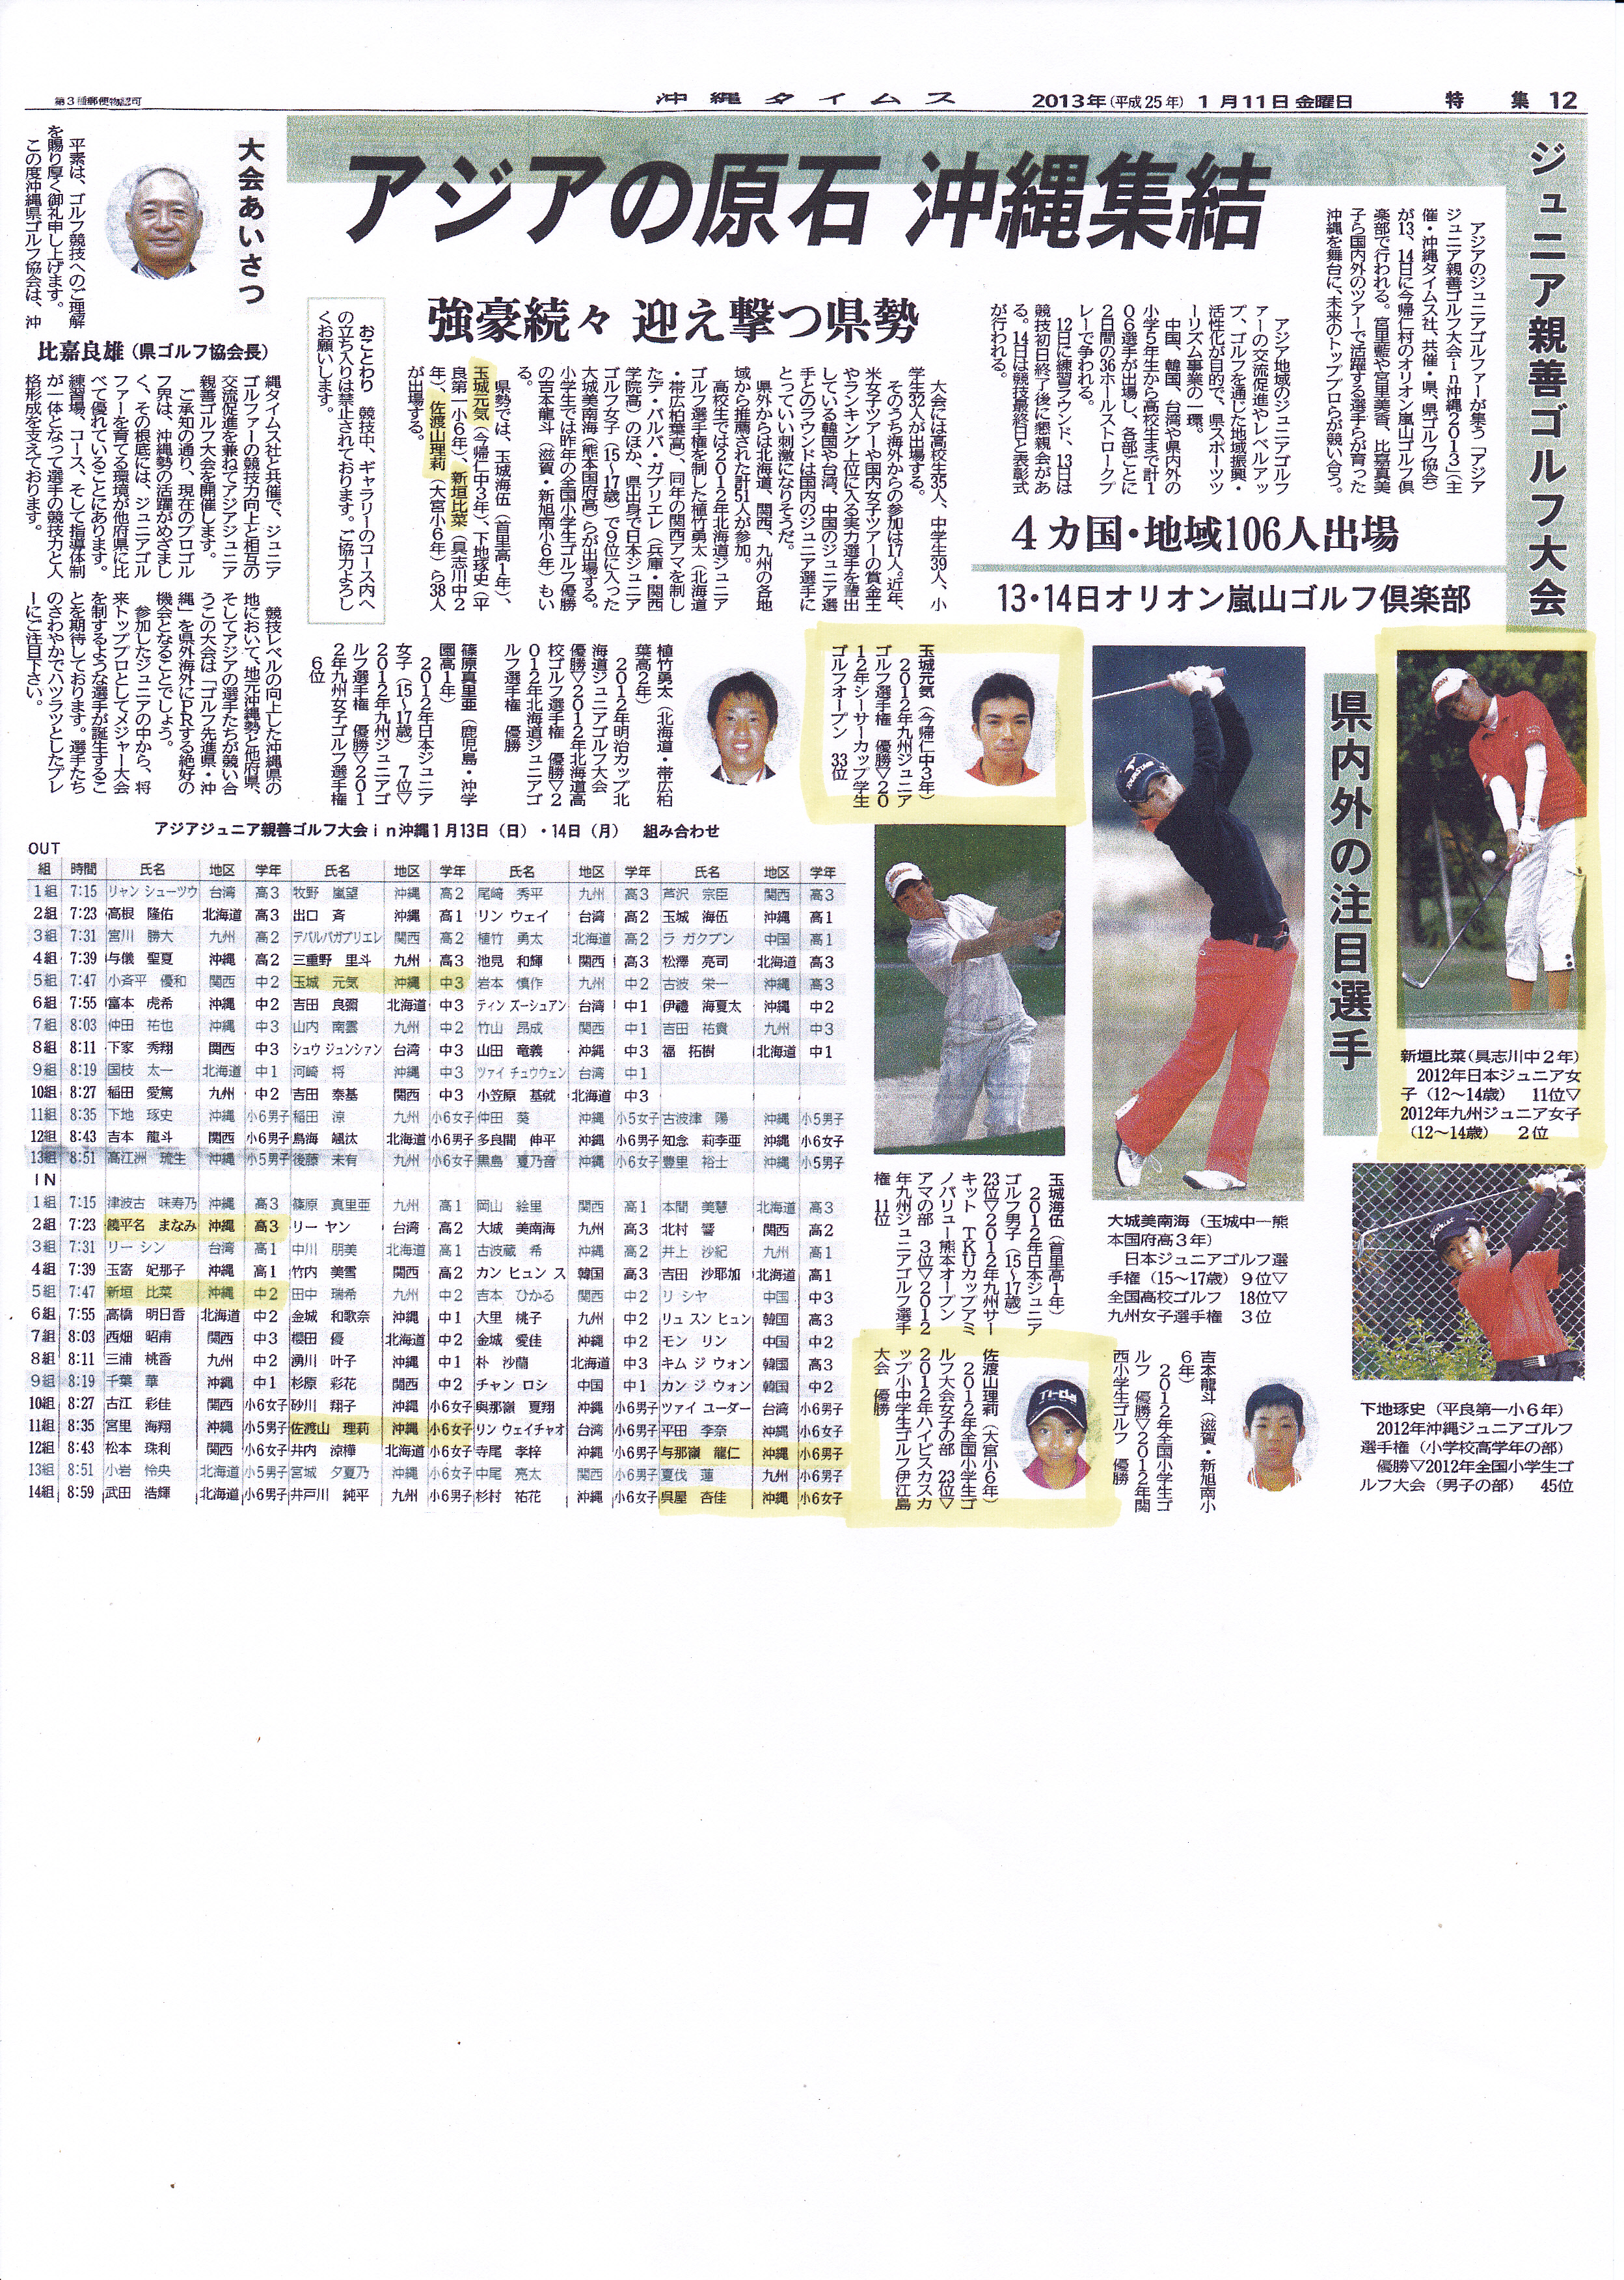 沖縄タイムス20130111アジアジュニア親善ゴルフ大会in沖縄2013.jpg